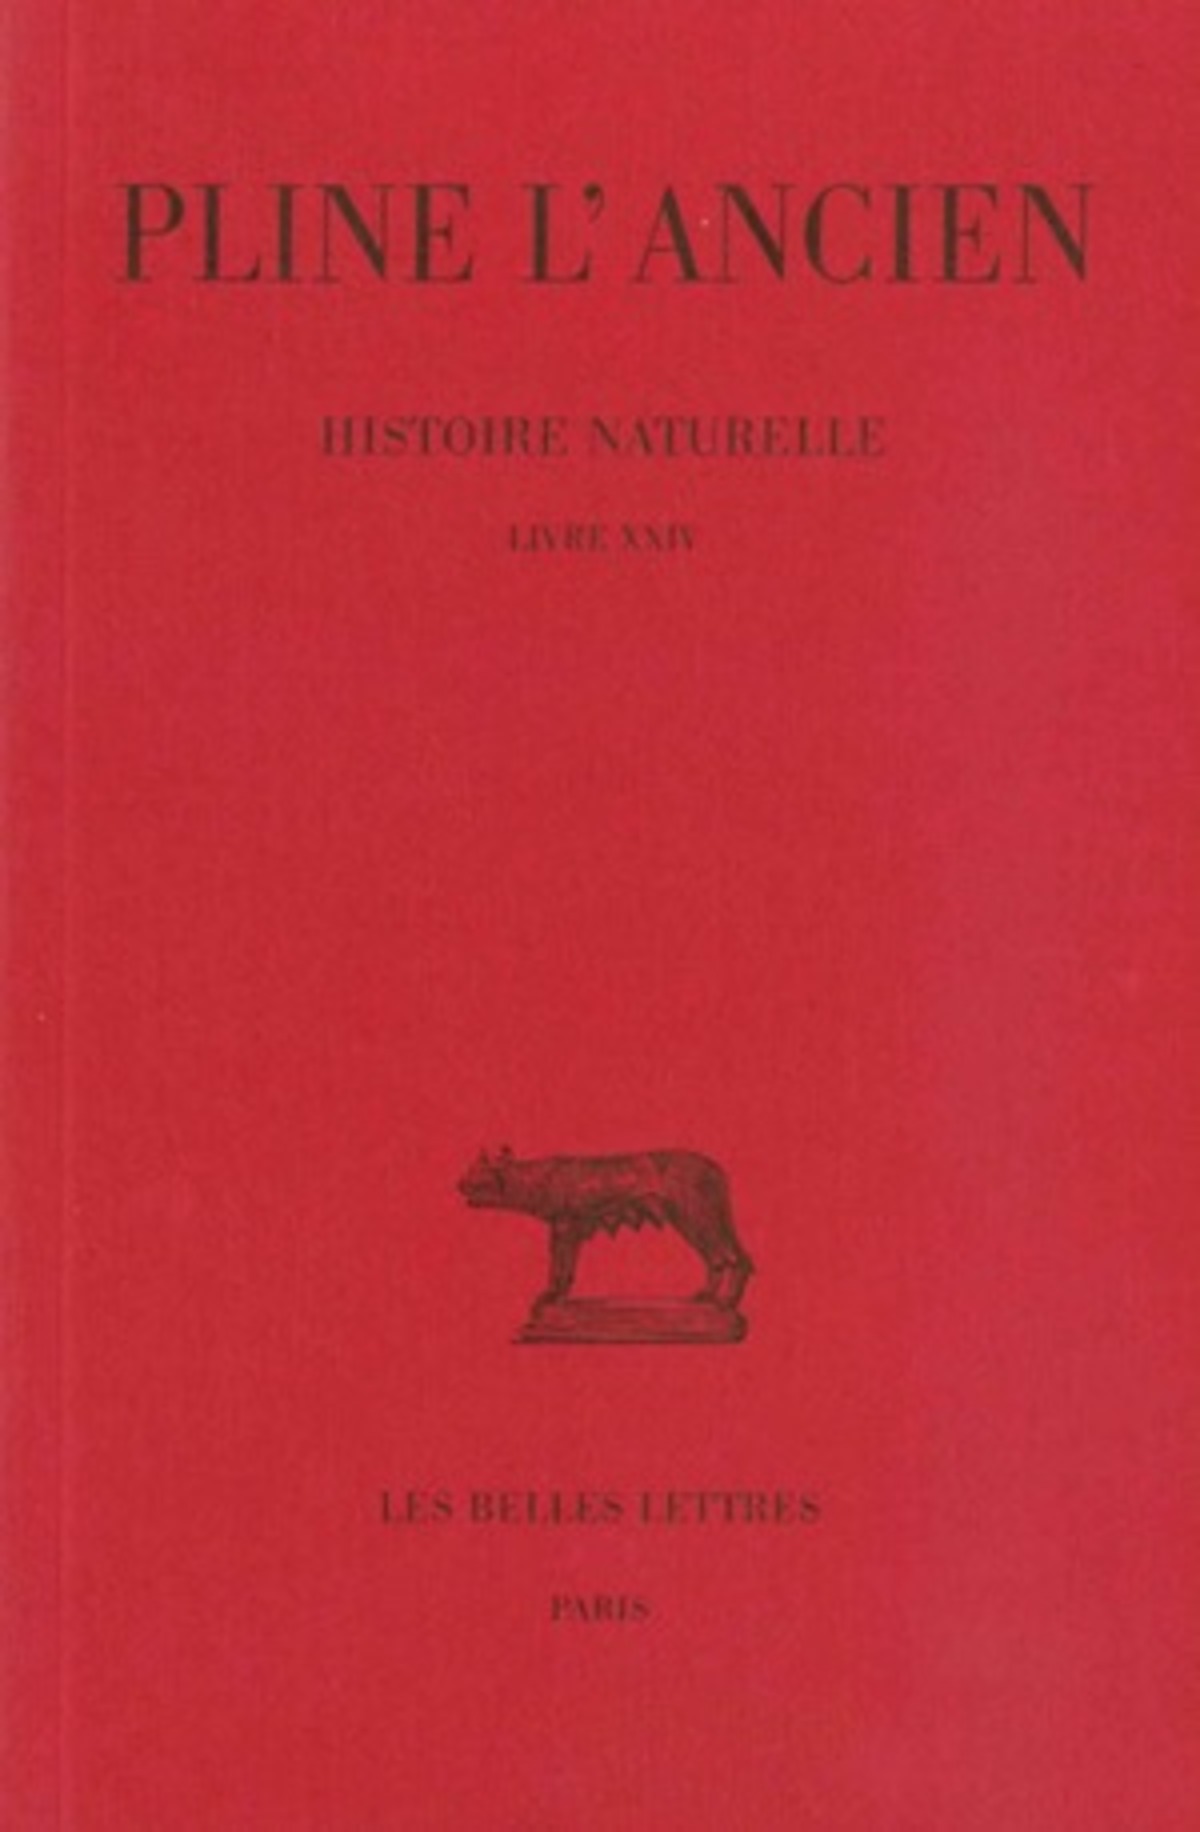 Histoire naturelle. Livre XXIV